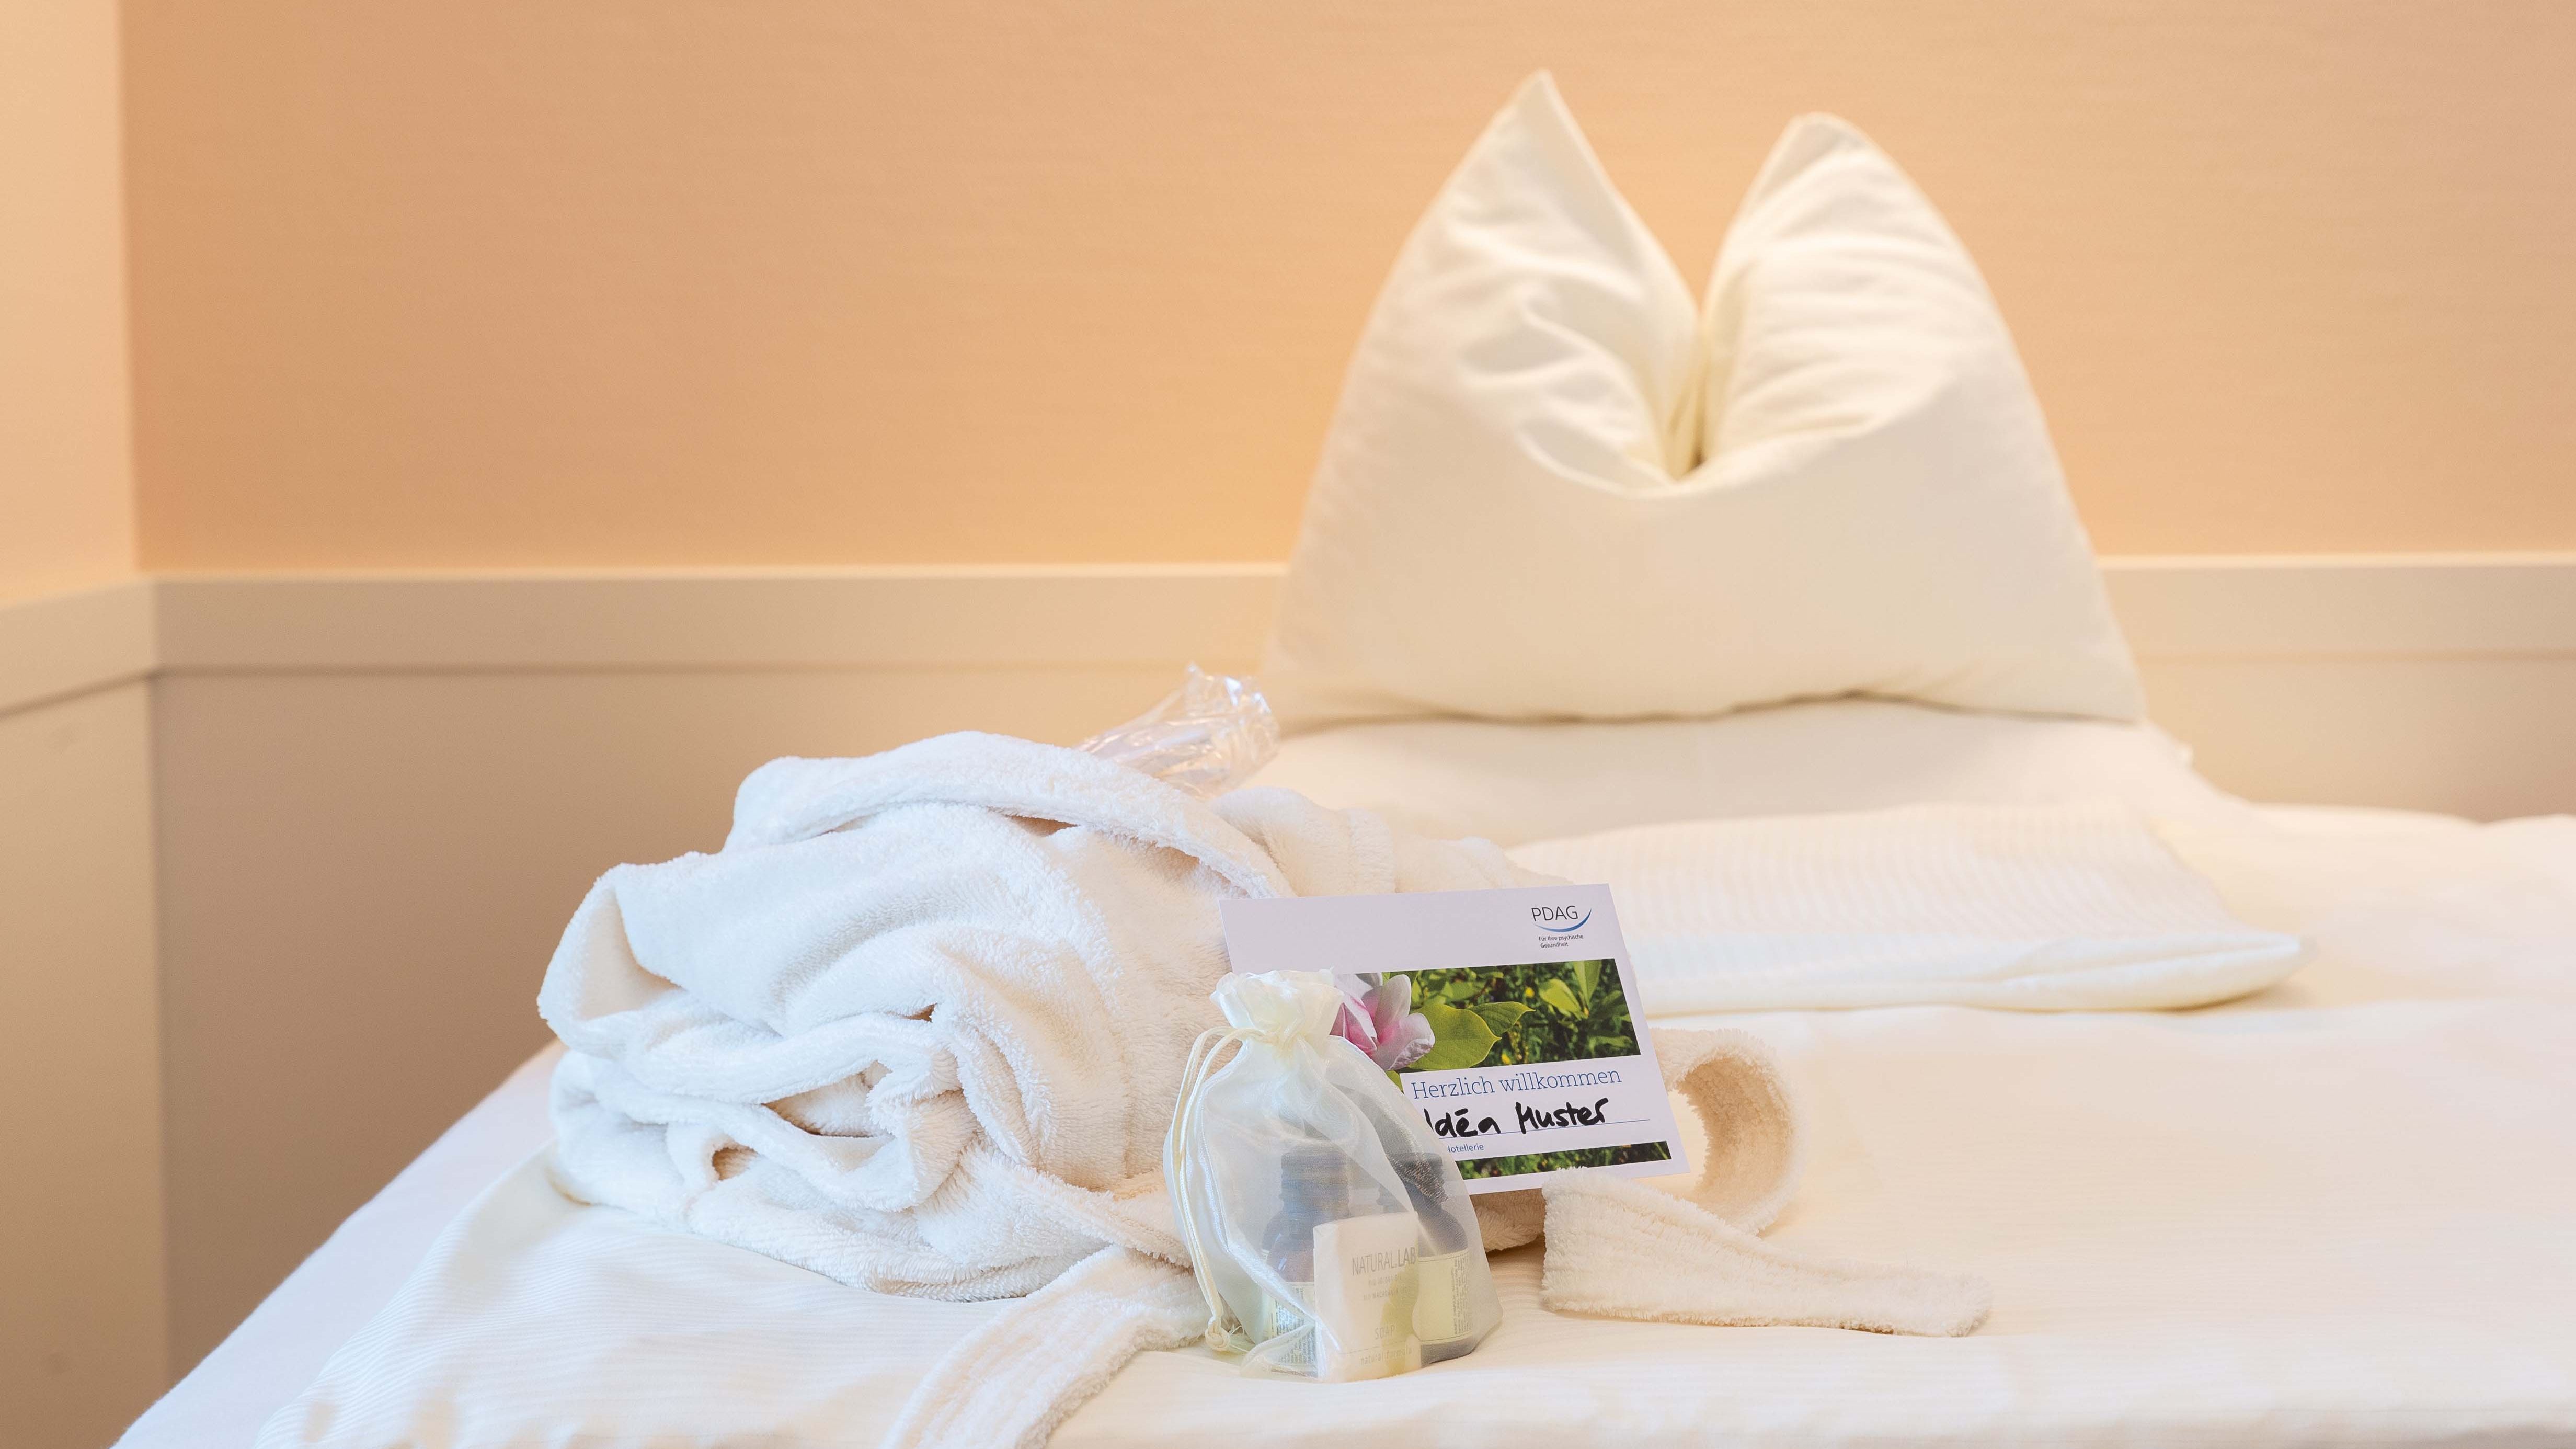 Ein Bett auf dem ein schön gefalteter Bademantel und ein Geschenkbeutel mit Pflegeartikeln liegen 